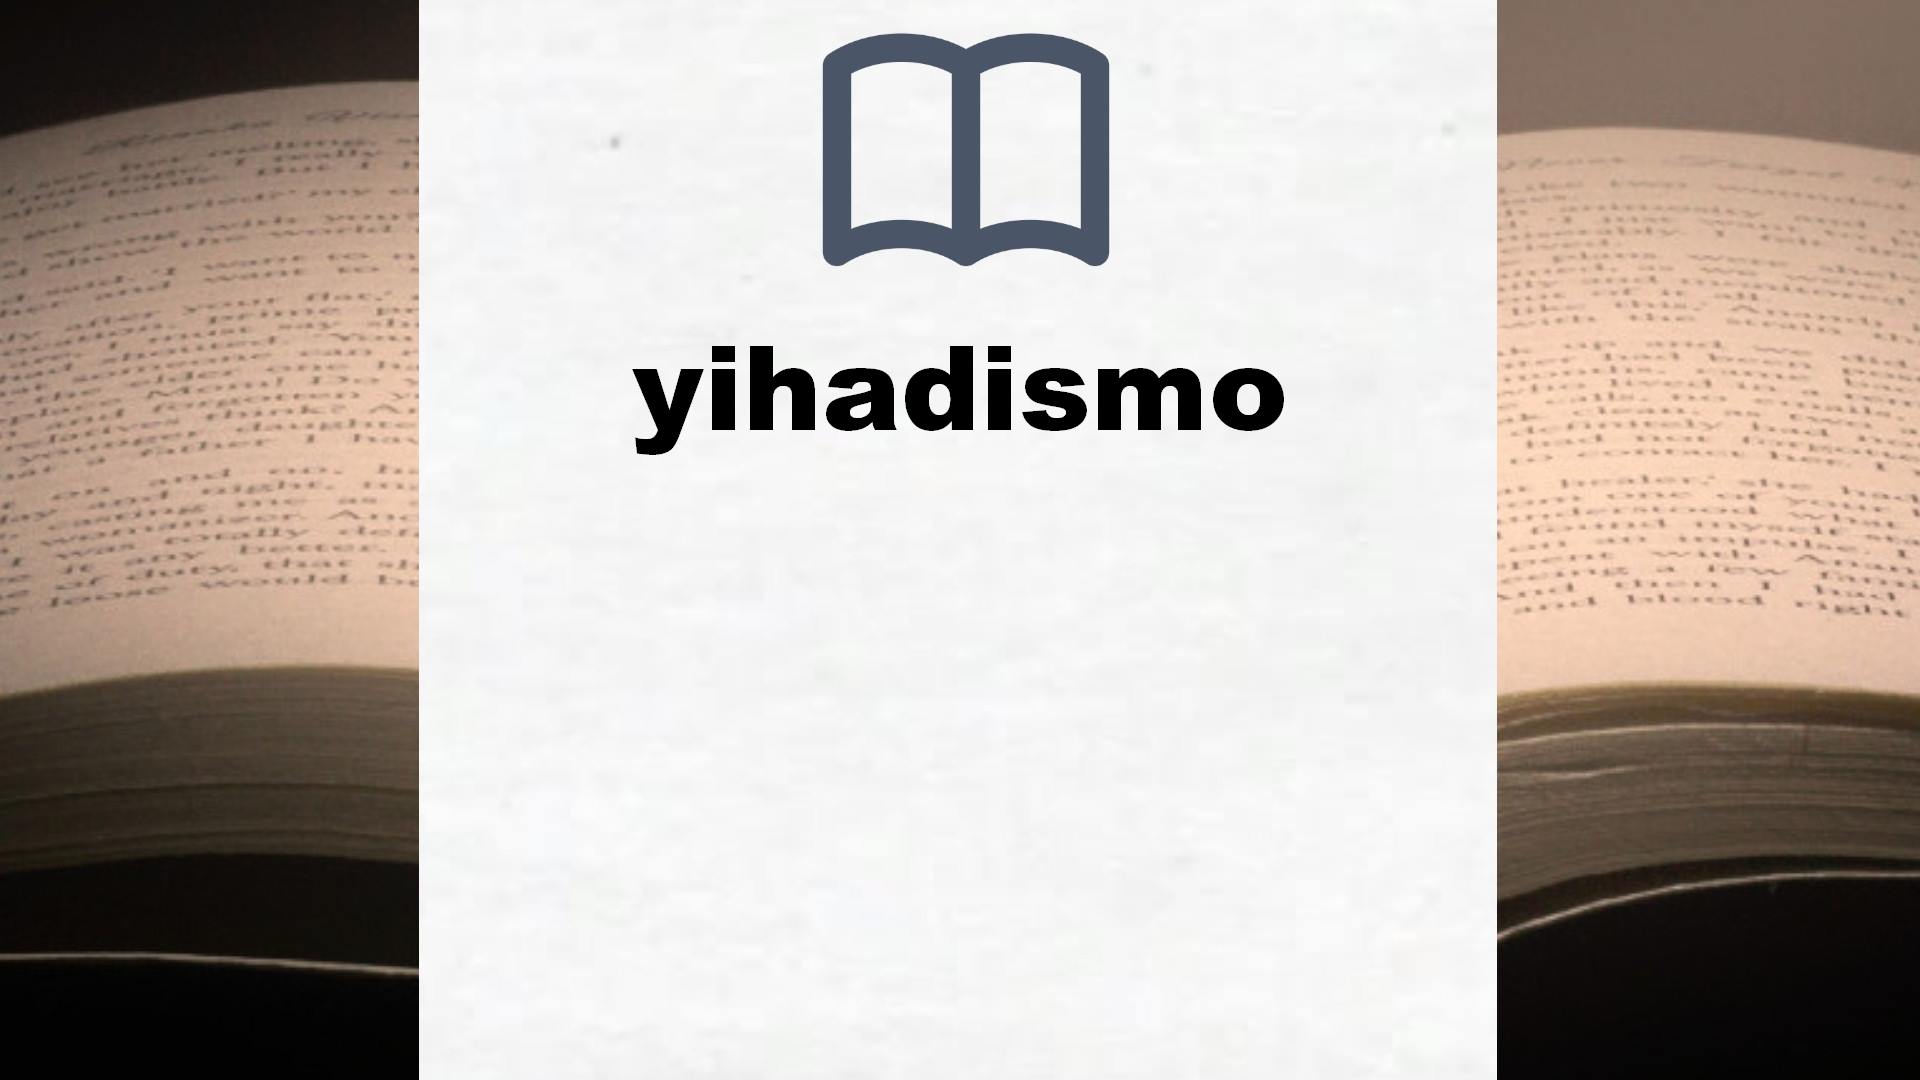 Libros sobre yihadismo